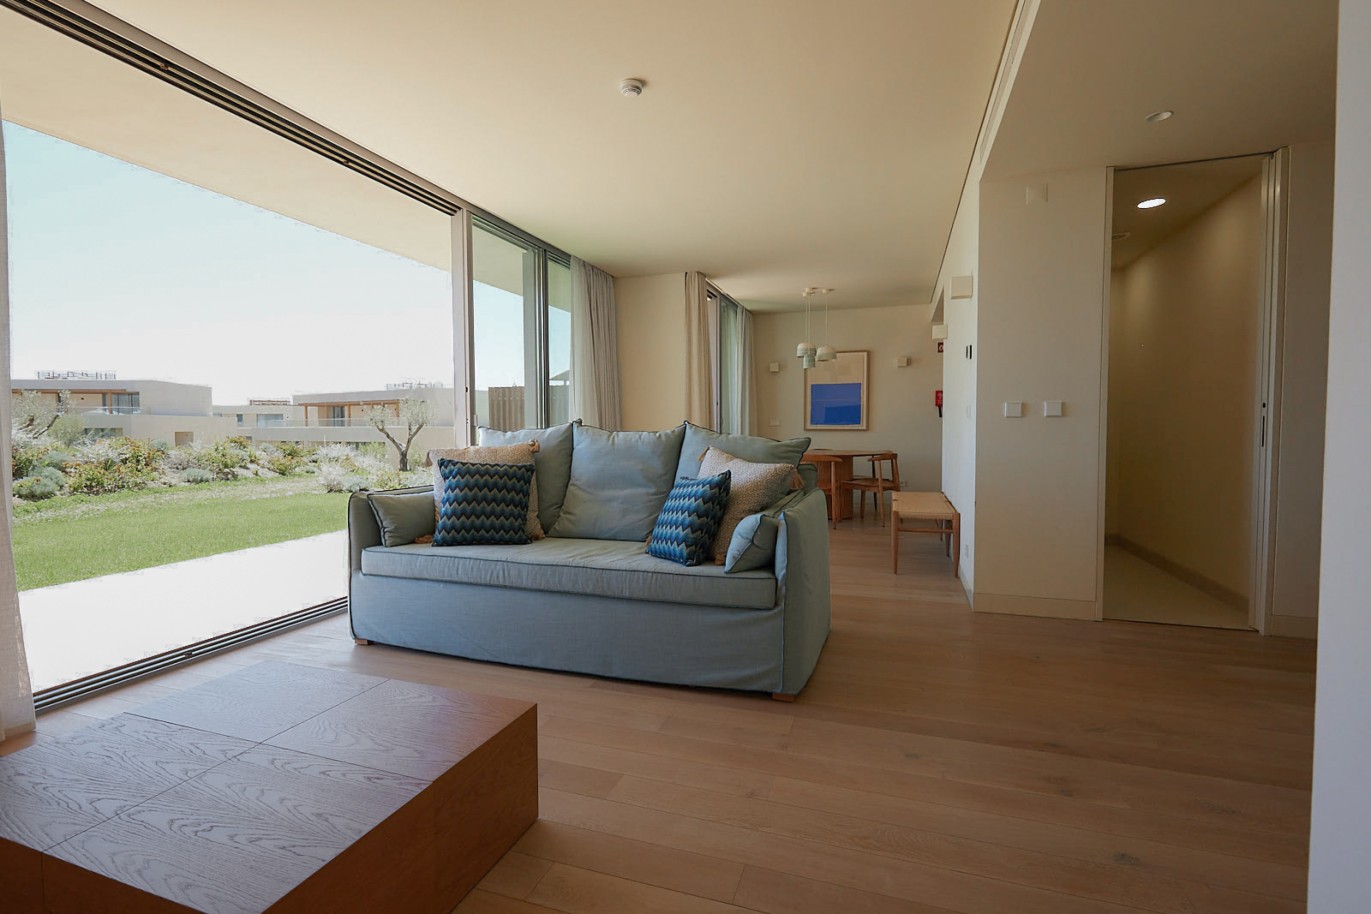 Piso de 3 dormitorios en complejo, en venta en Porches, Algarve_228599